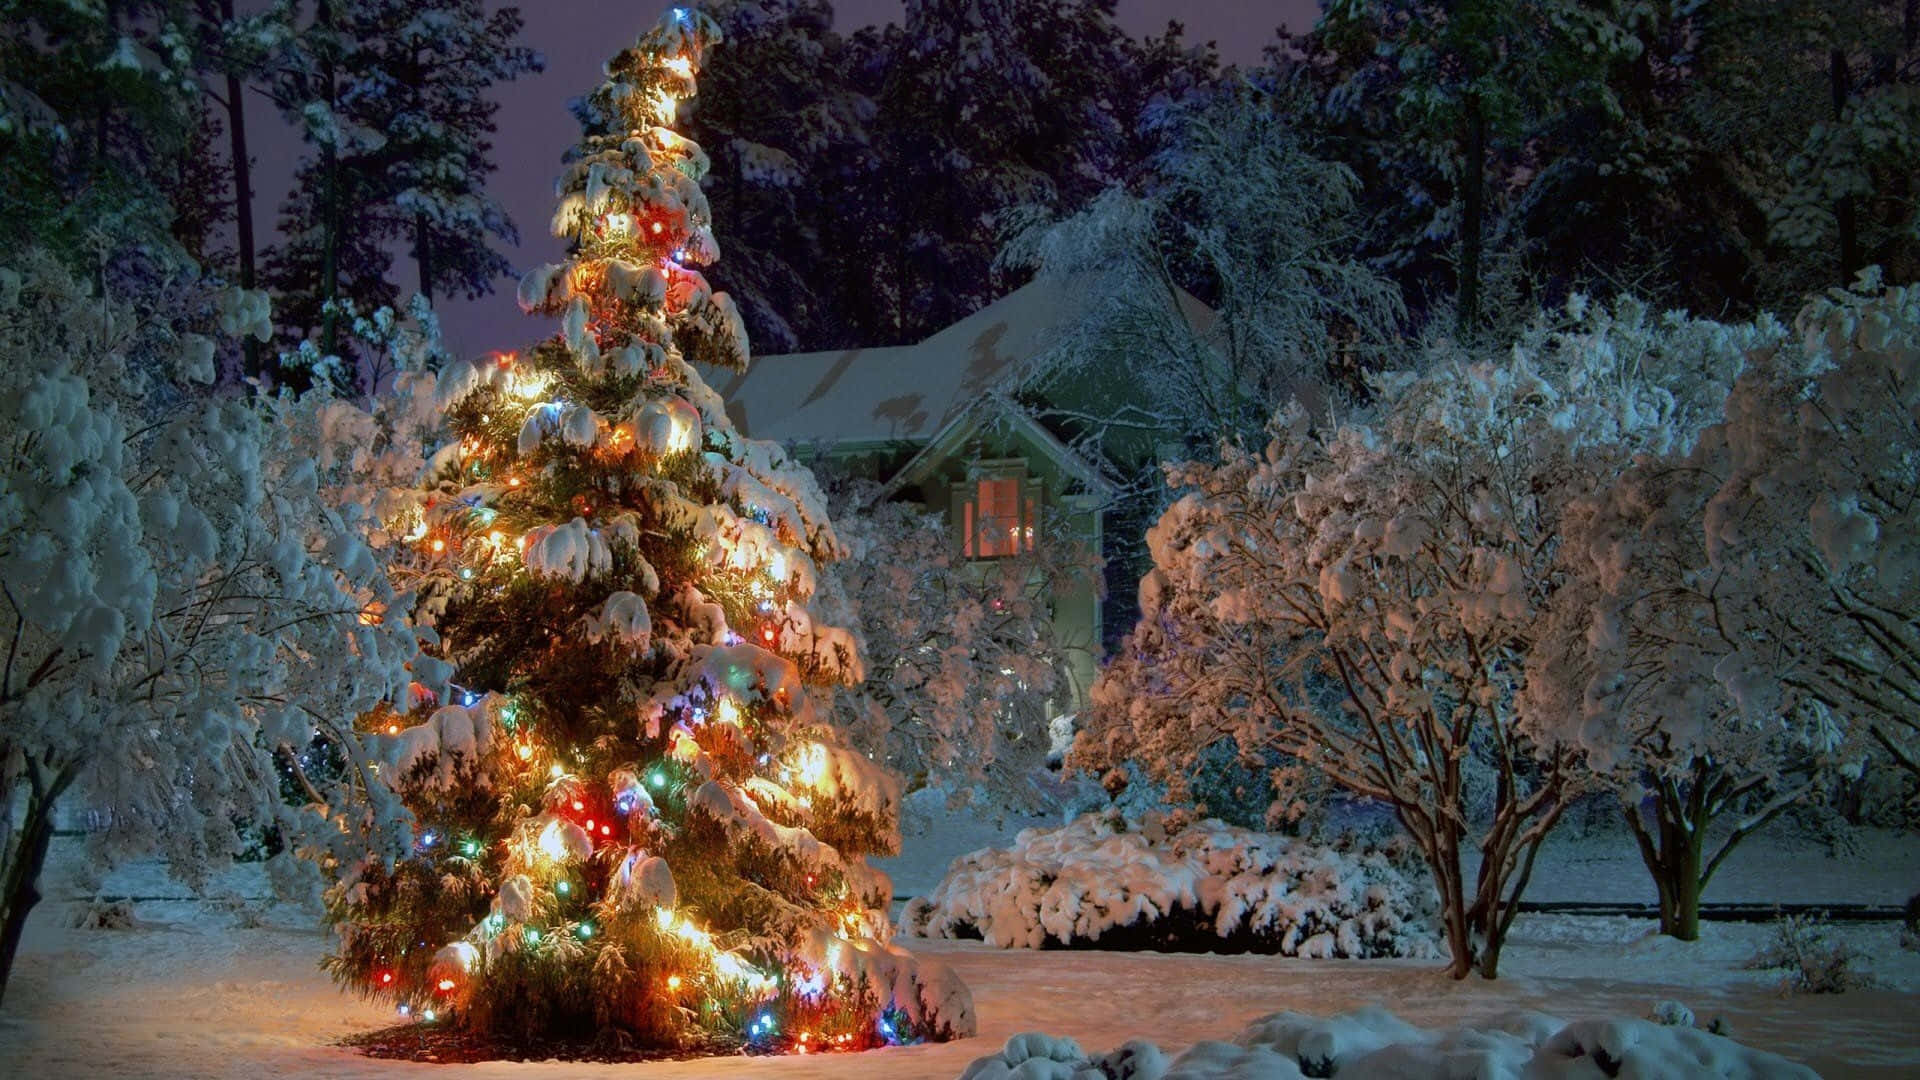 Fondode Pantalla De Invierno Con Un Árbol De Navidad Y Luces De Colores. Fondo de pantalla